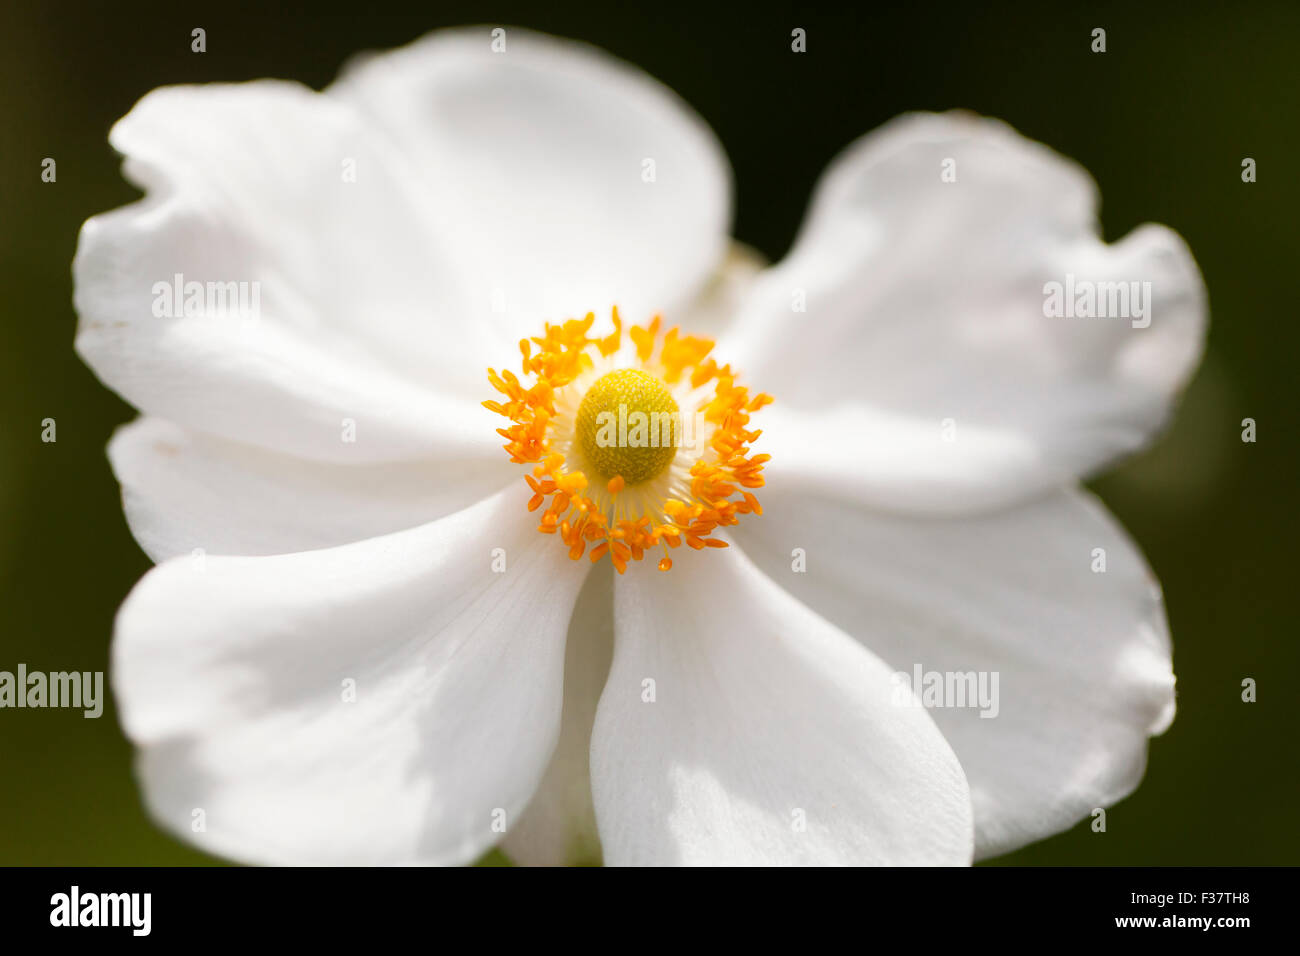 Japanese anemone flower (hybrid Honorine Jobert) Stock Photo